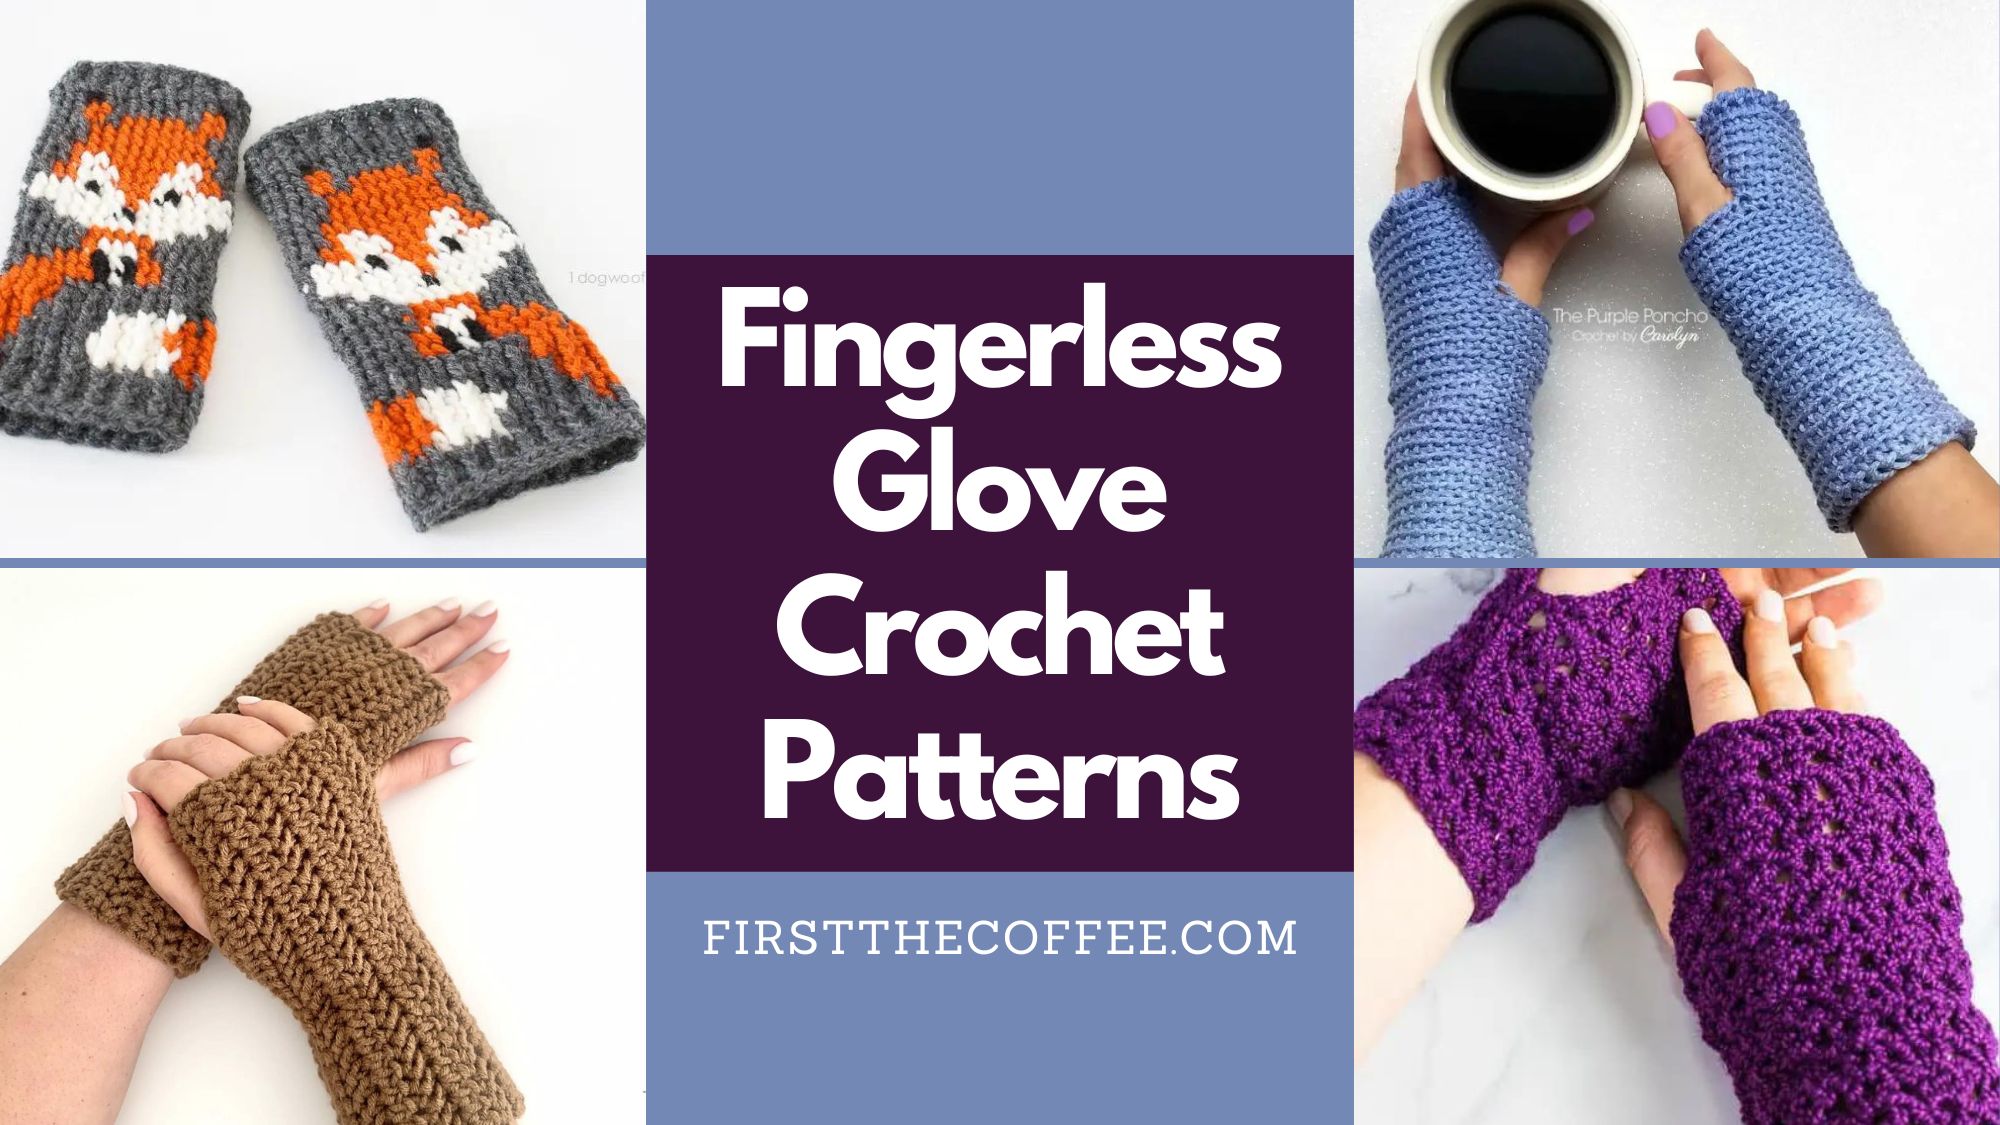 Fingerless Glove Crochet Patterns